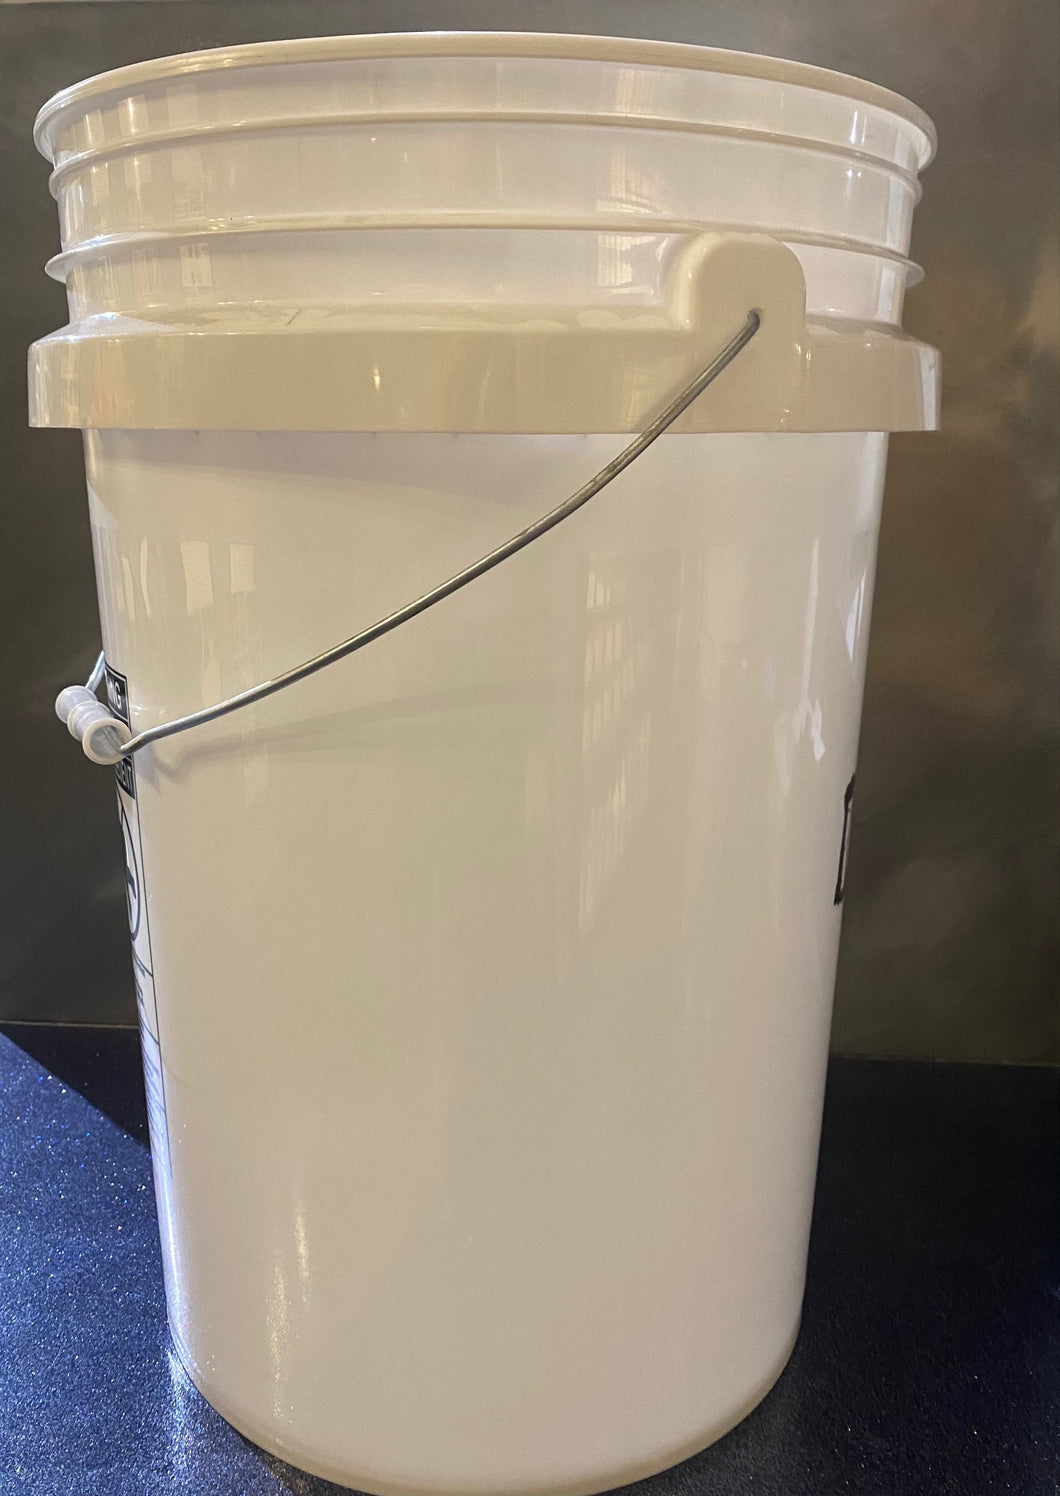 6 Gallon Mix Bucket (no measurements)